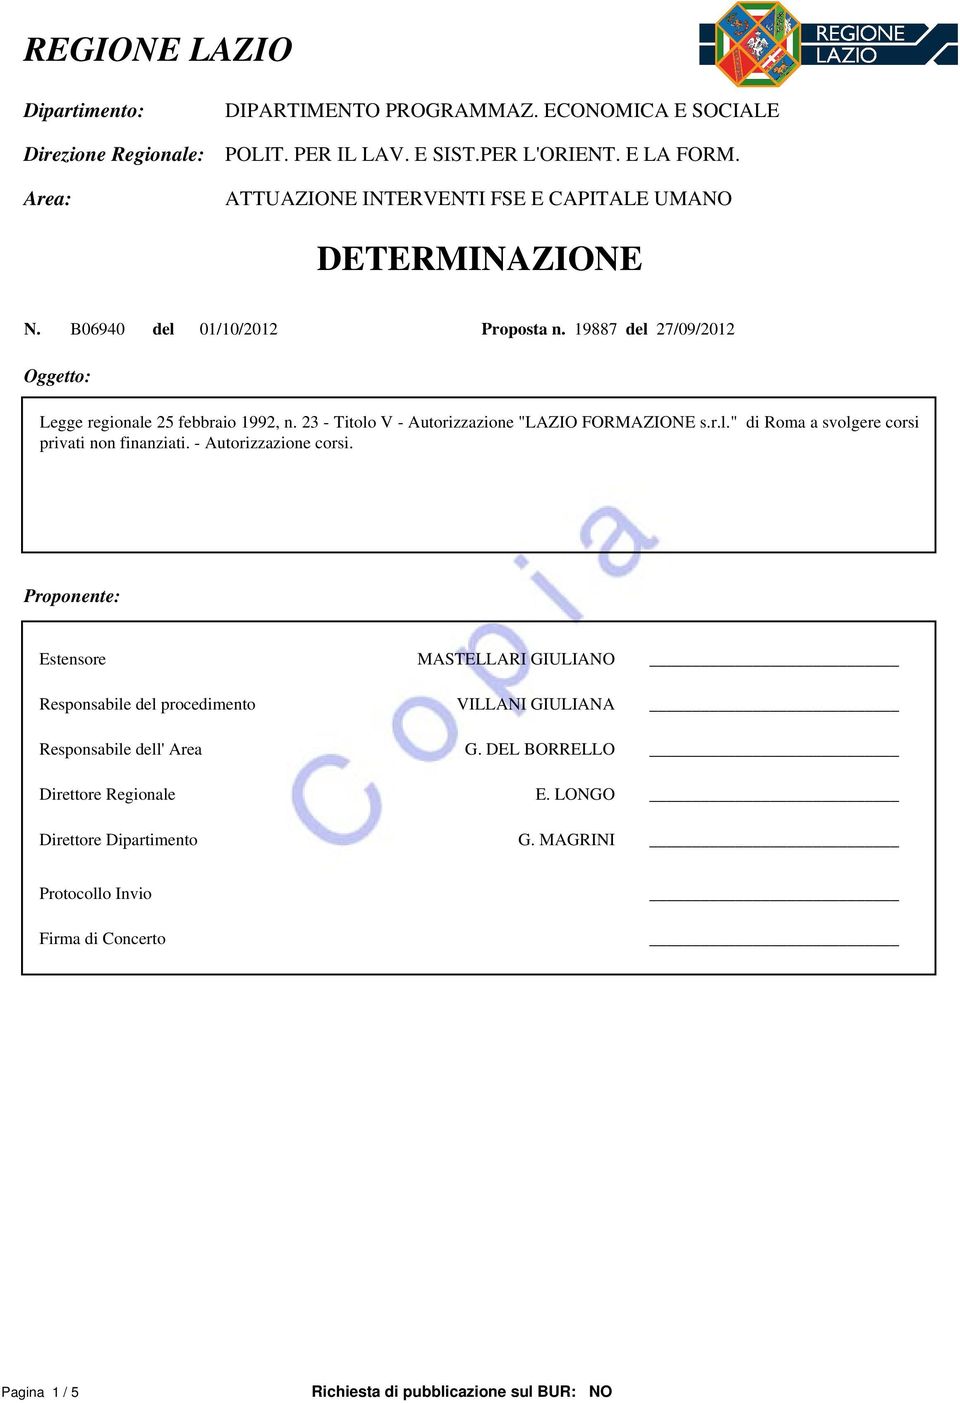 23 - Titolo V - Autorizzazione "LAZIO FORMAZIONE s.r.l." di Roma a svolgere corsi privati non finanziati. - Autorizzazione corsi.